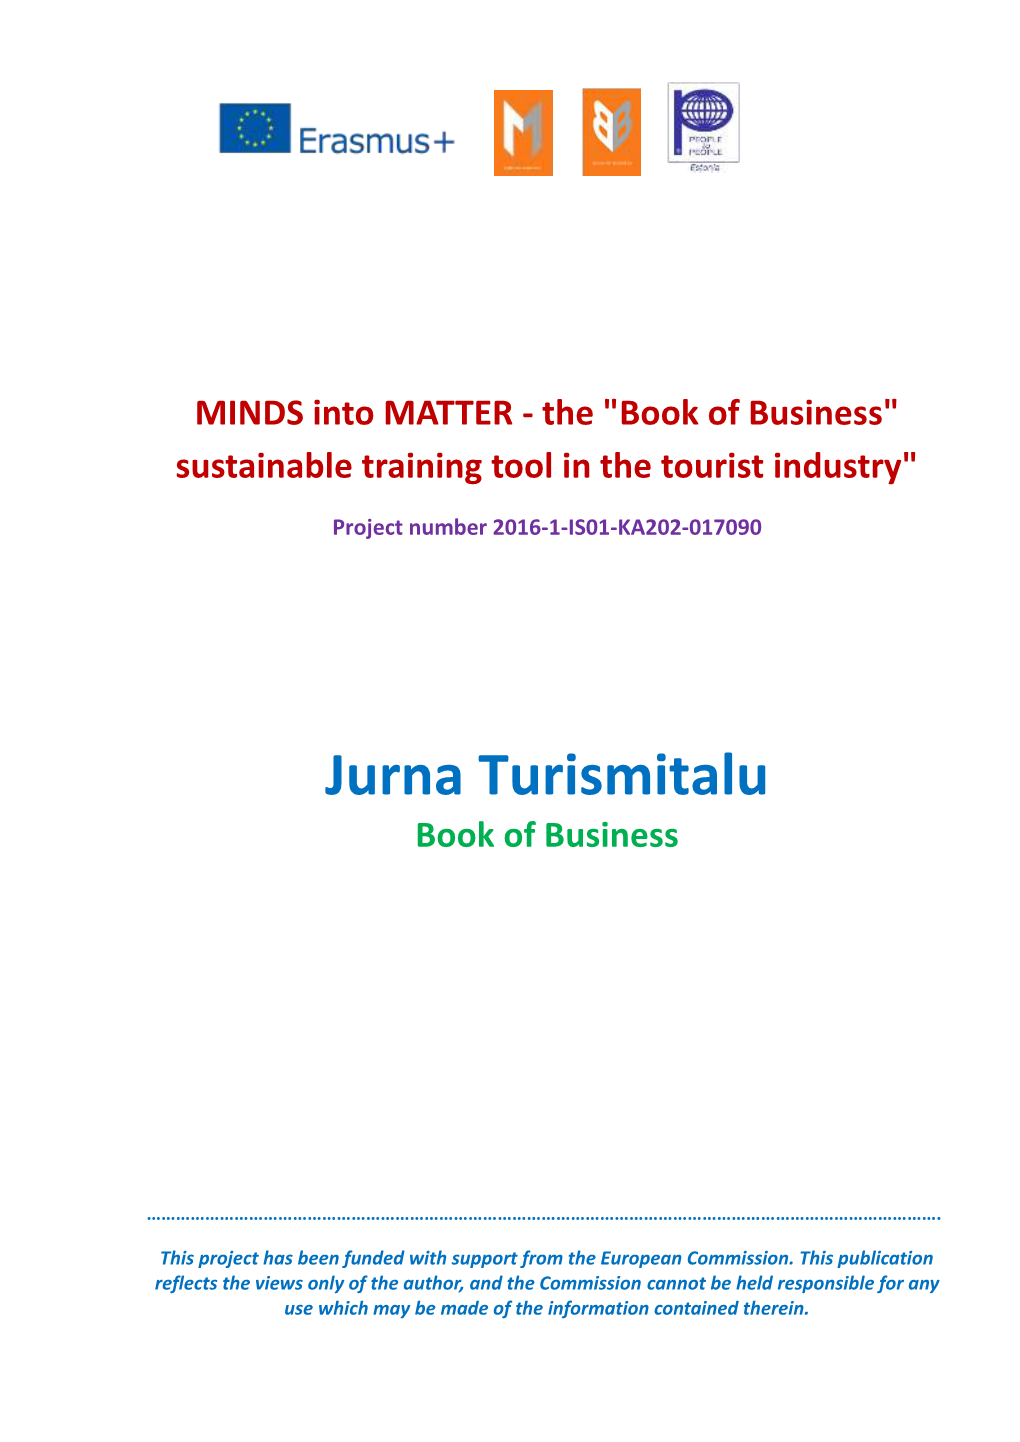 Jurna Turismitalu Book of Business